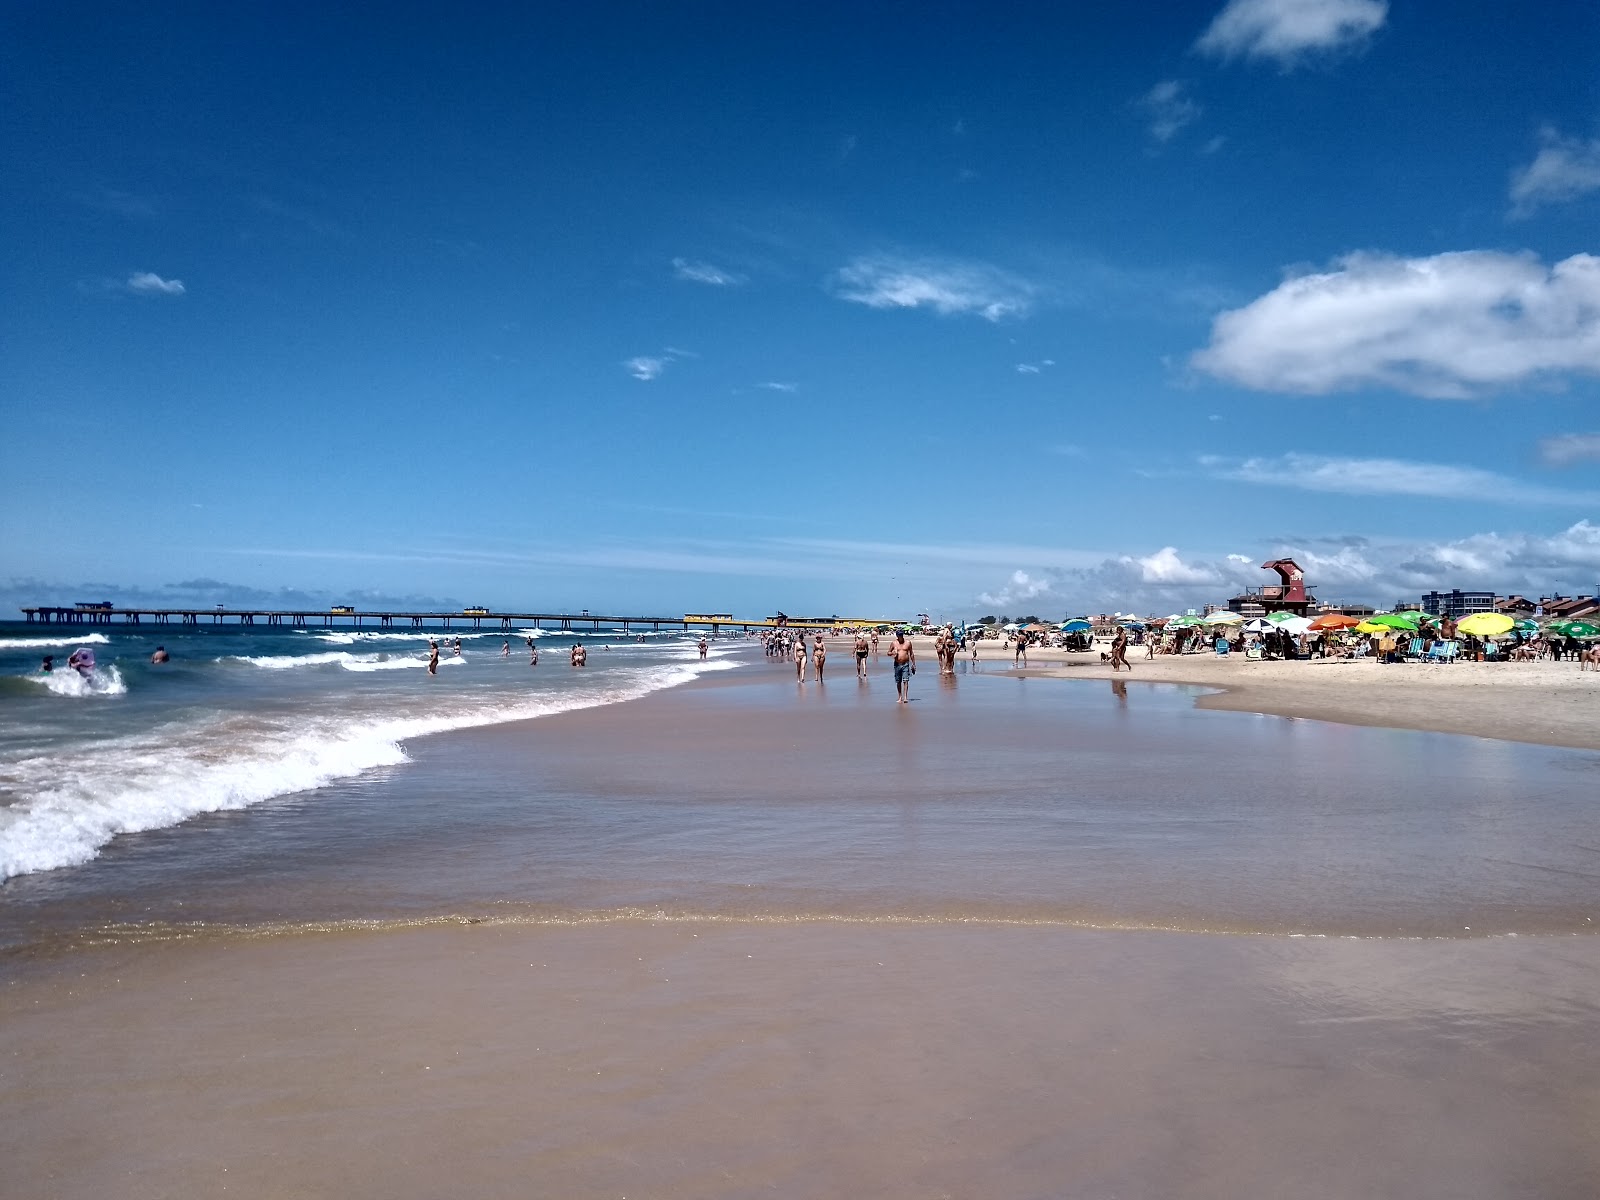 Praia de Tramandai'in fotoğrafı parlak ince kum yüzey ile